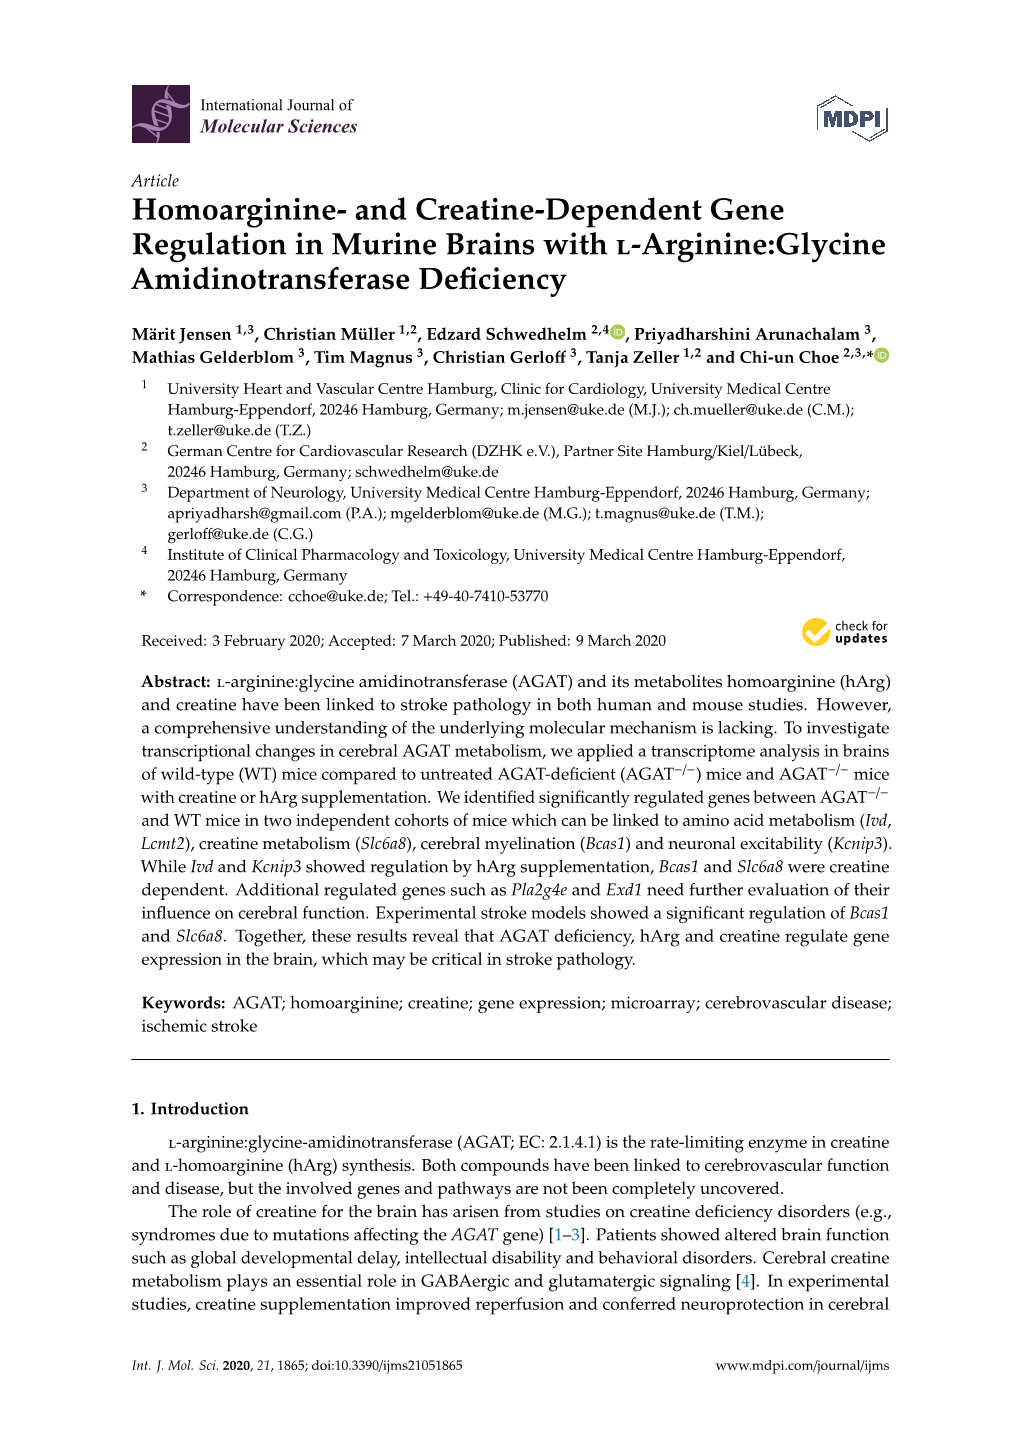 Homoarginine- and Creatine-Dependent Gene Regulation in Murine Brains with L-Arginine:Glycine Amidinotransferase Deﬁciency